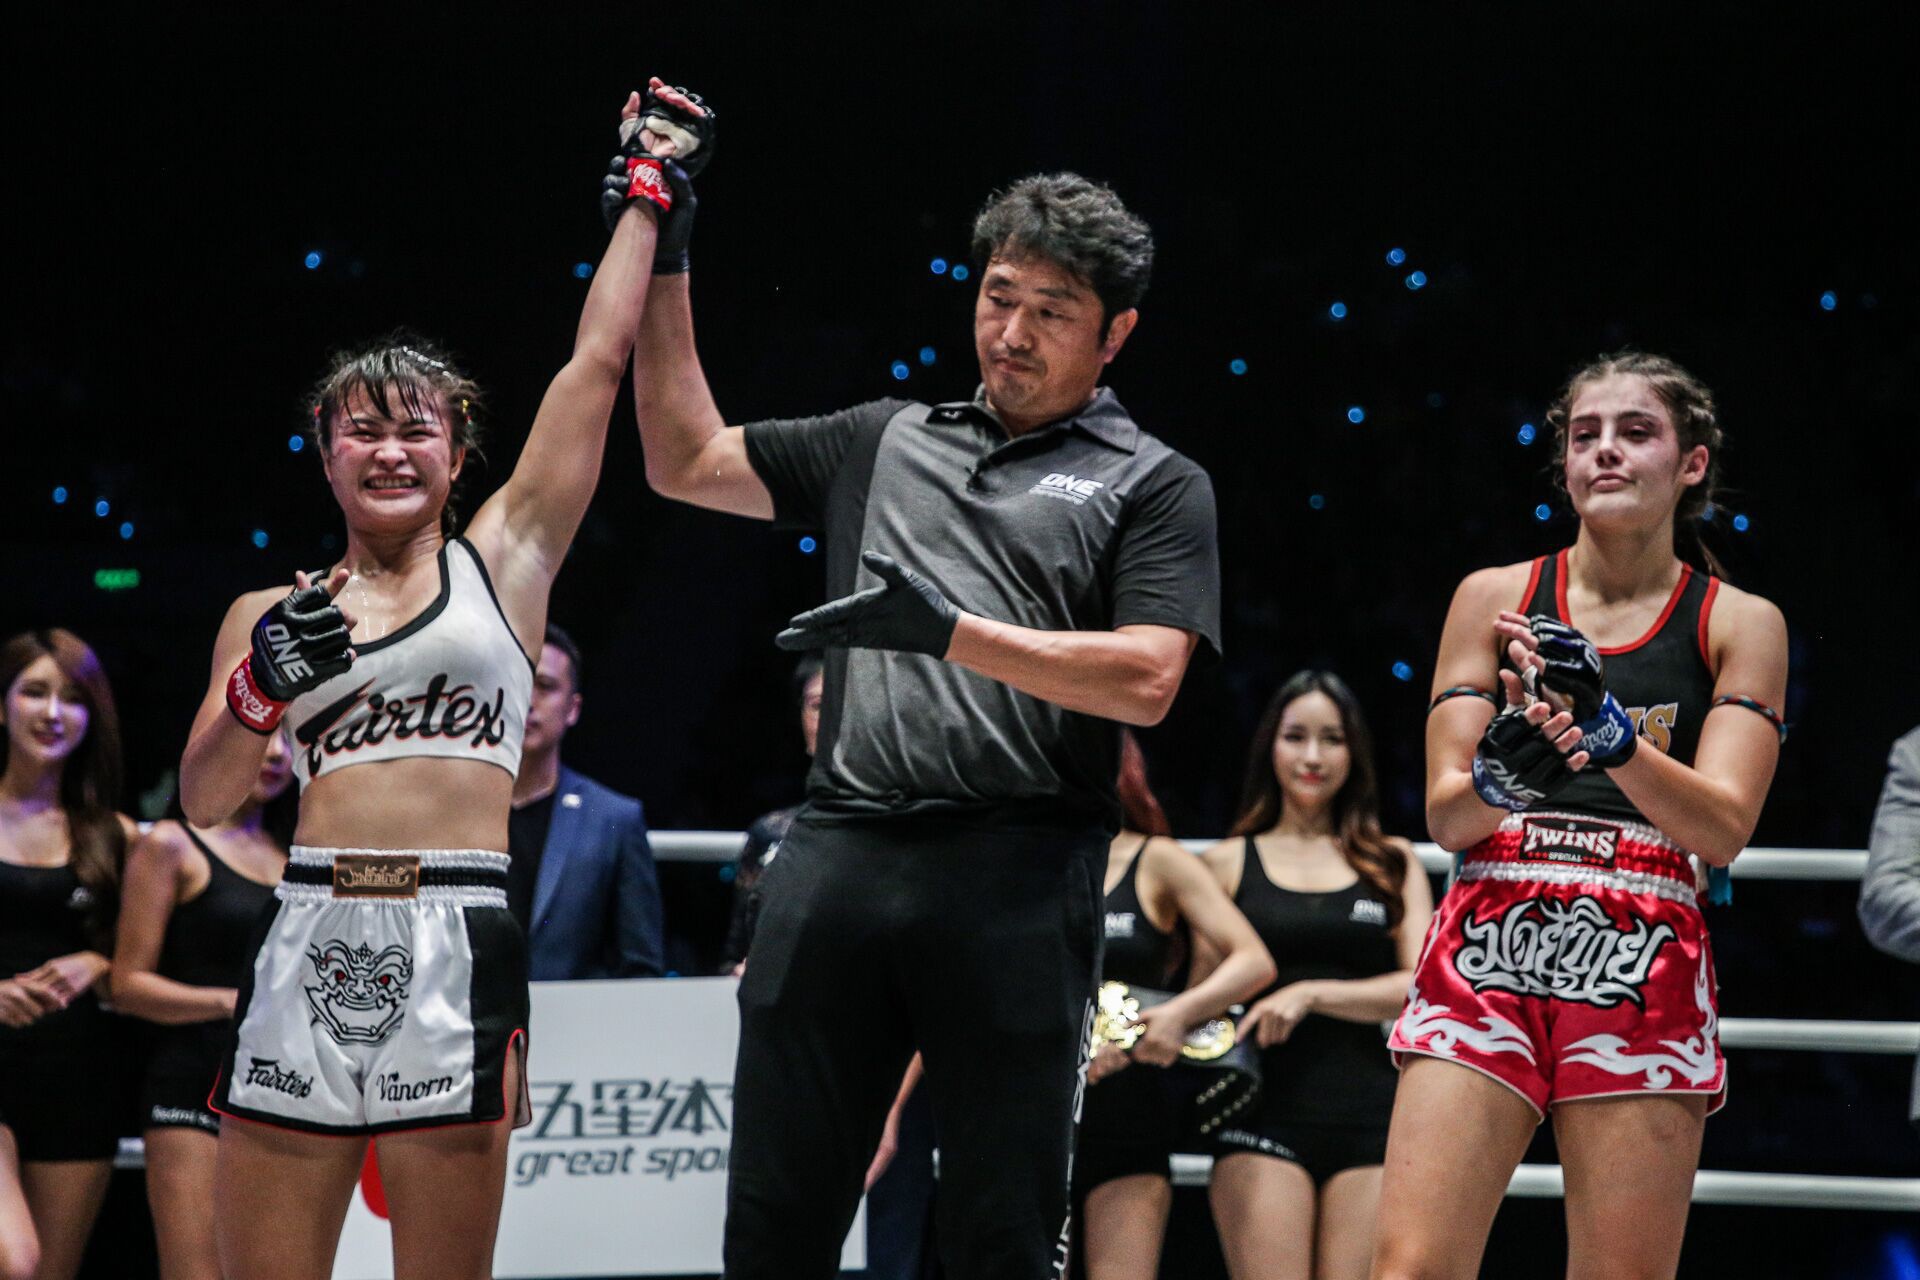 Mĩ nhân vạn người mê của làng võ bị đánh bầm dập đến mức khó nhận ra trong ngày ra mắt giải MMA lớn nhất châu Á - Ảnh 4.